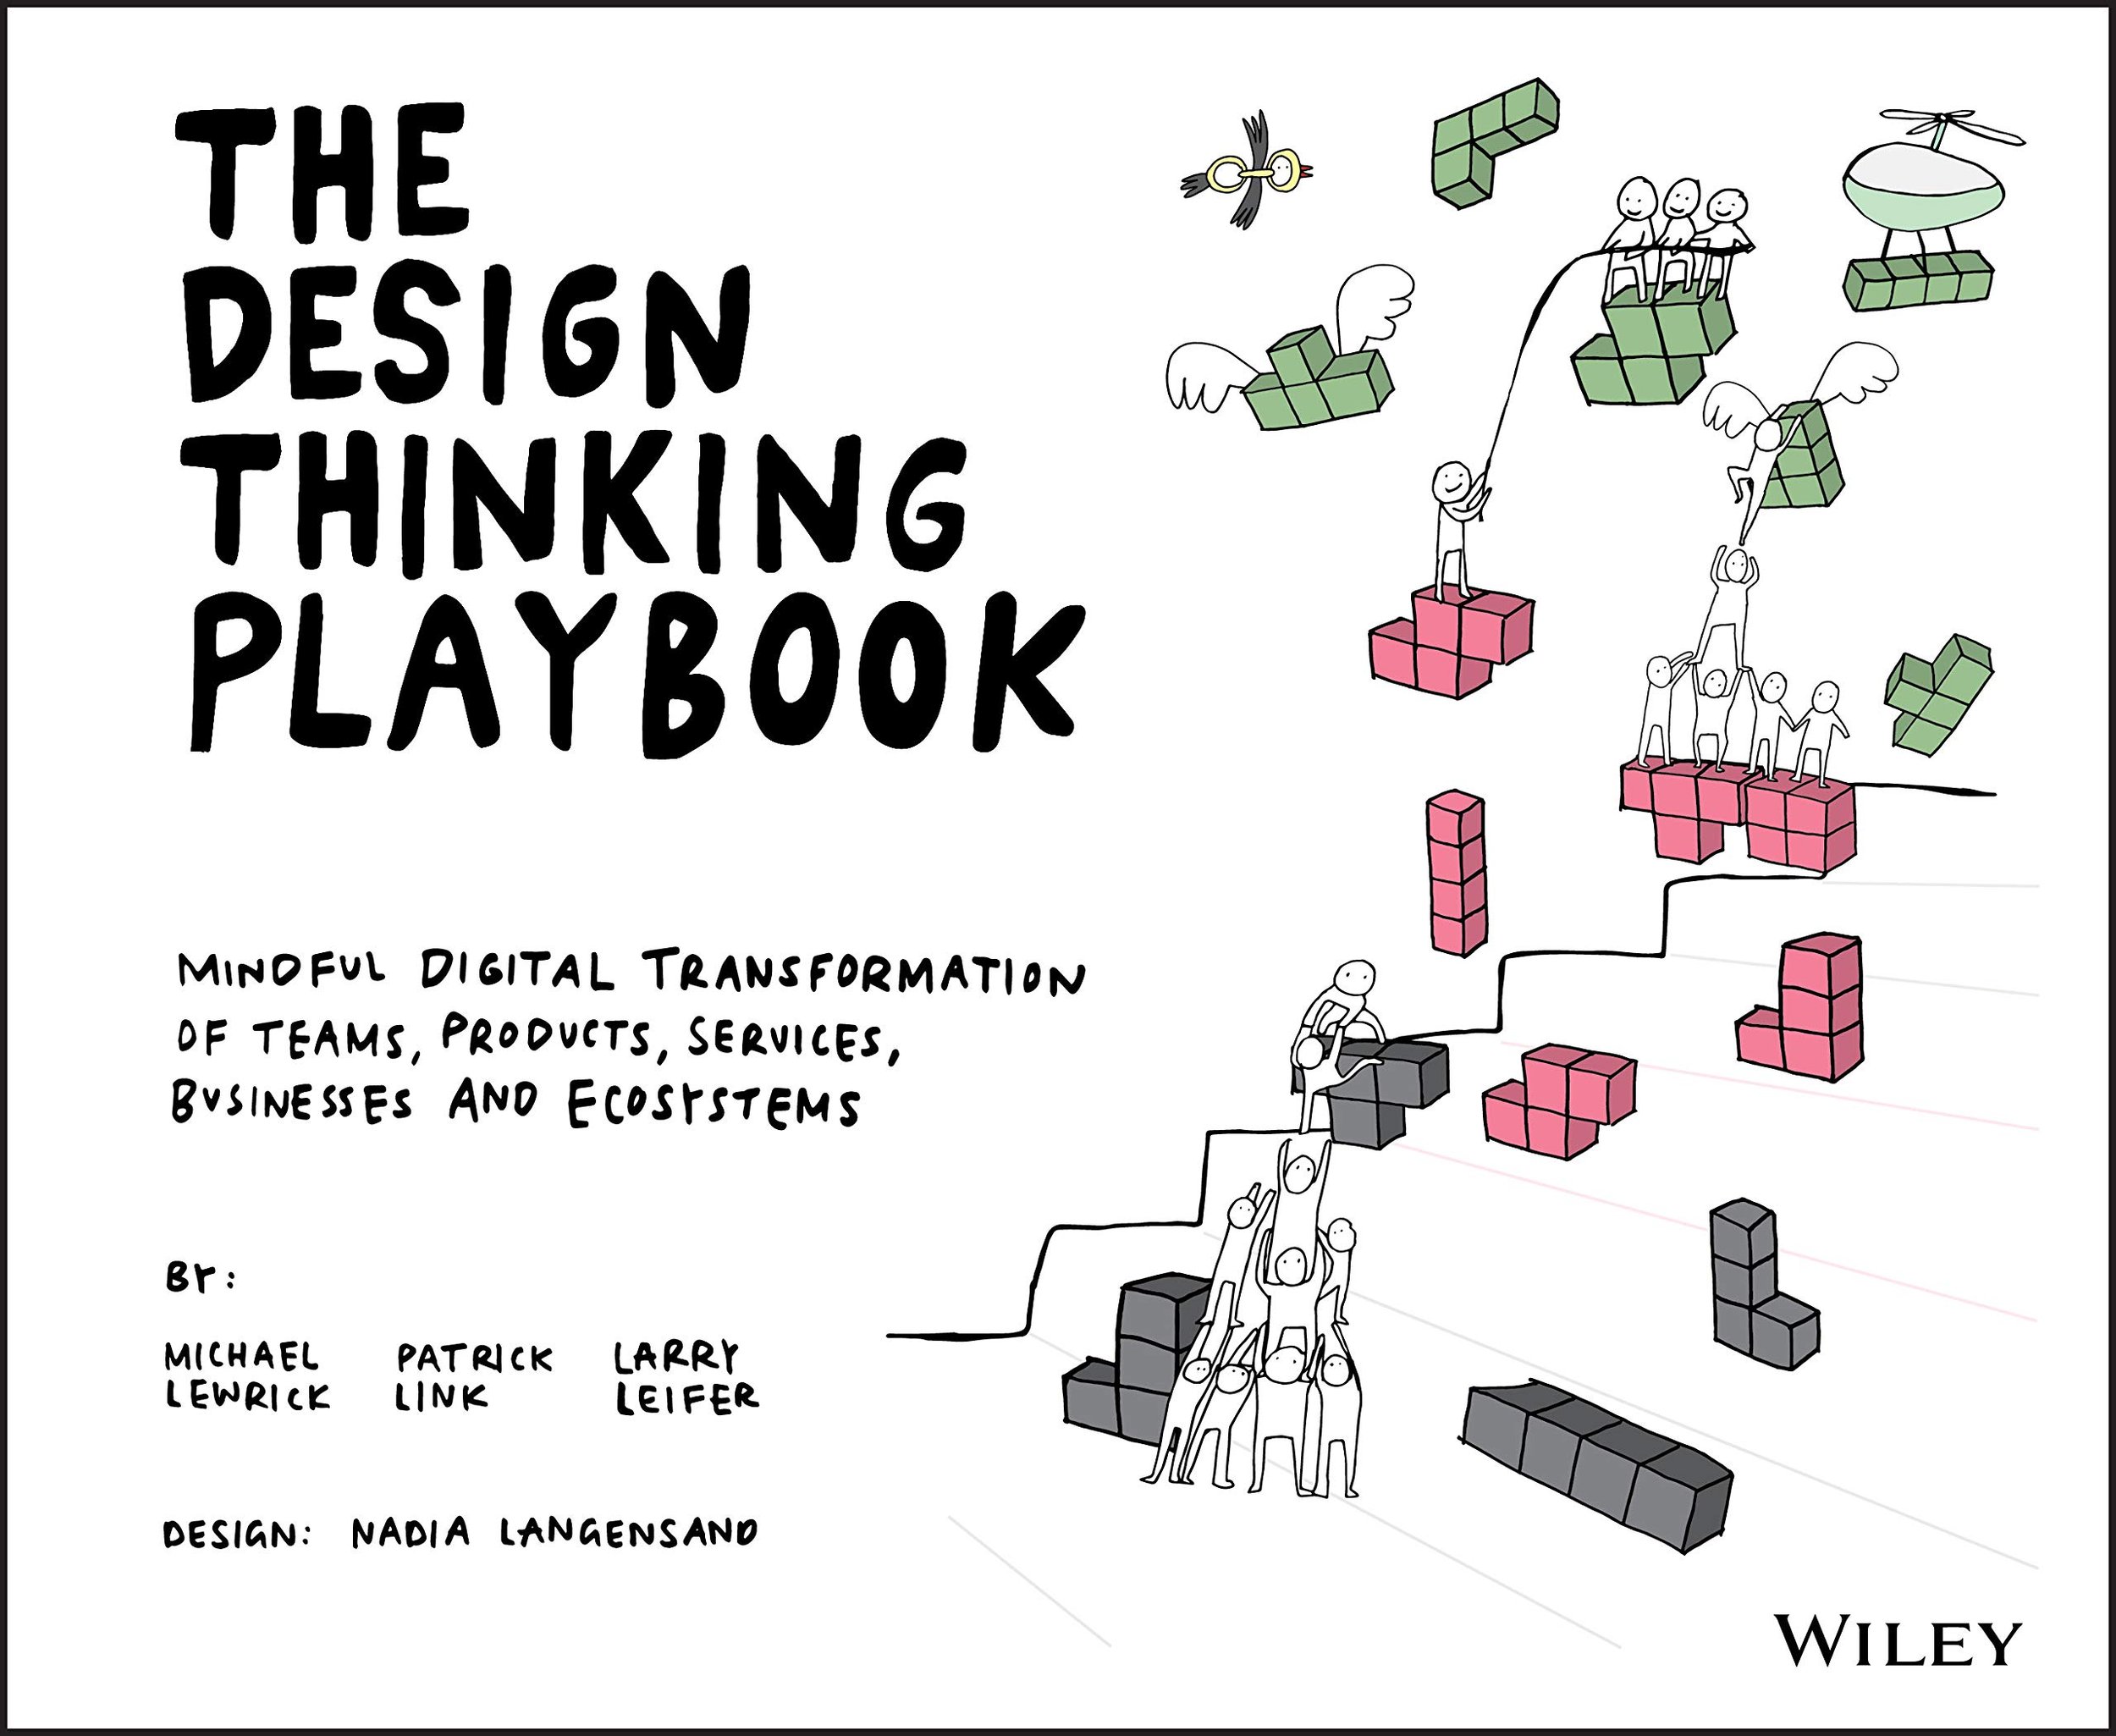 Design playbook.jpeg